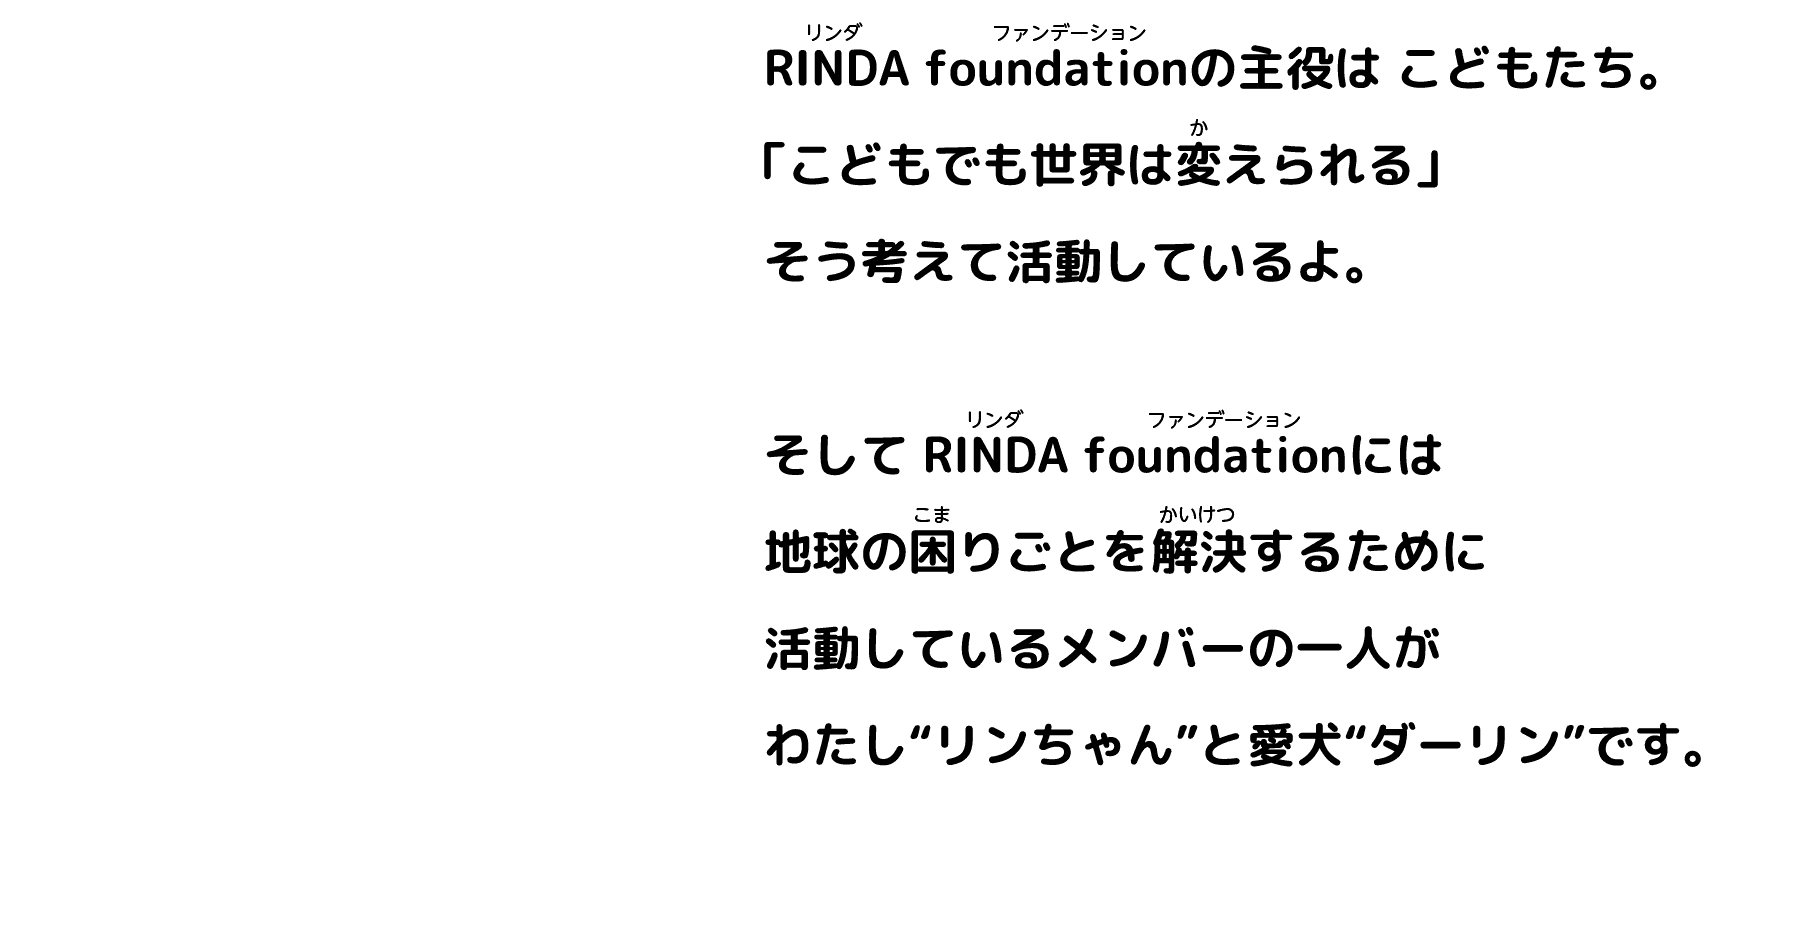 RINDA fundationの主役はこどもたち。「こどもで世界は変えられる」そう考えているよ。